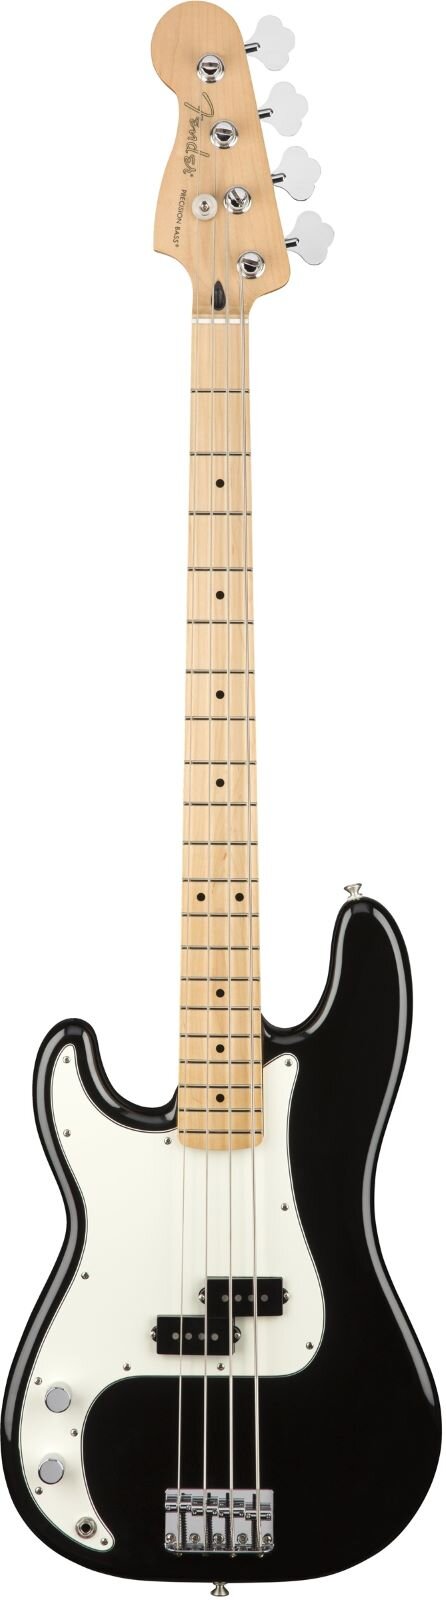 Fender Player Precision Bass Linkshänder Ahorngriffbrett schwarz : photo 1